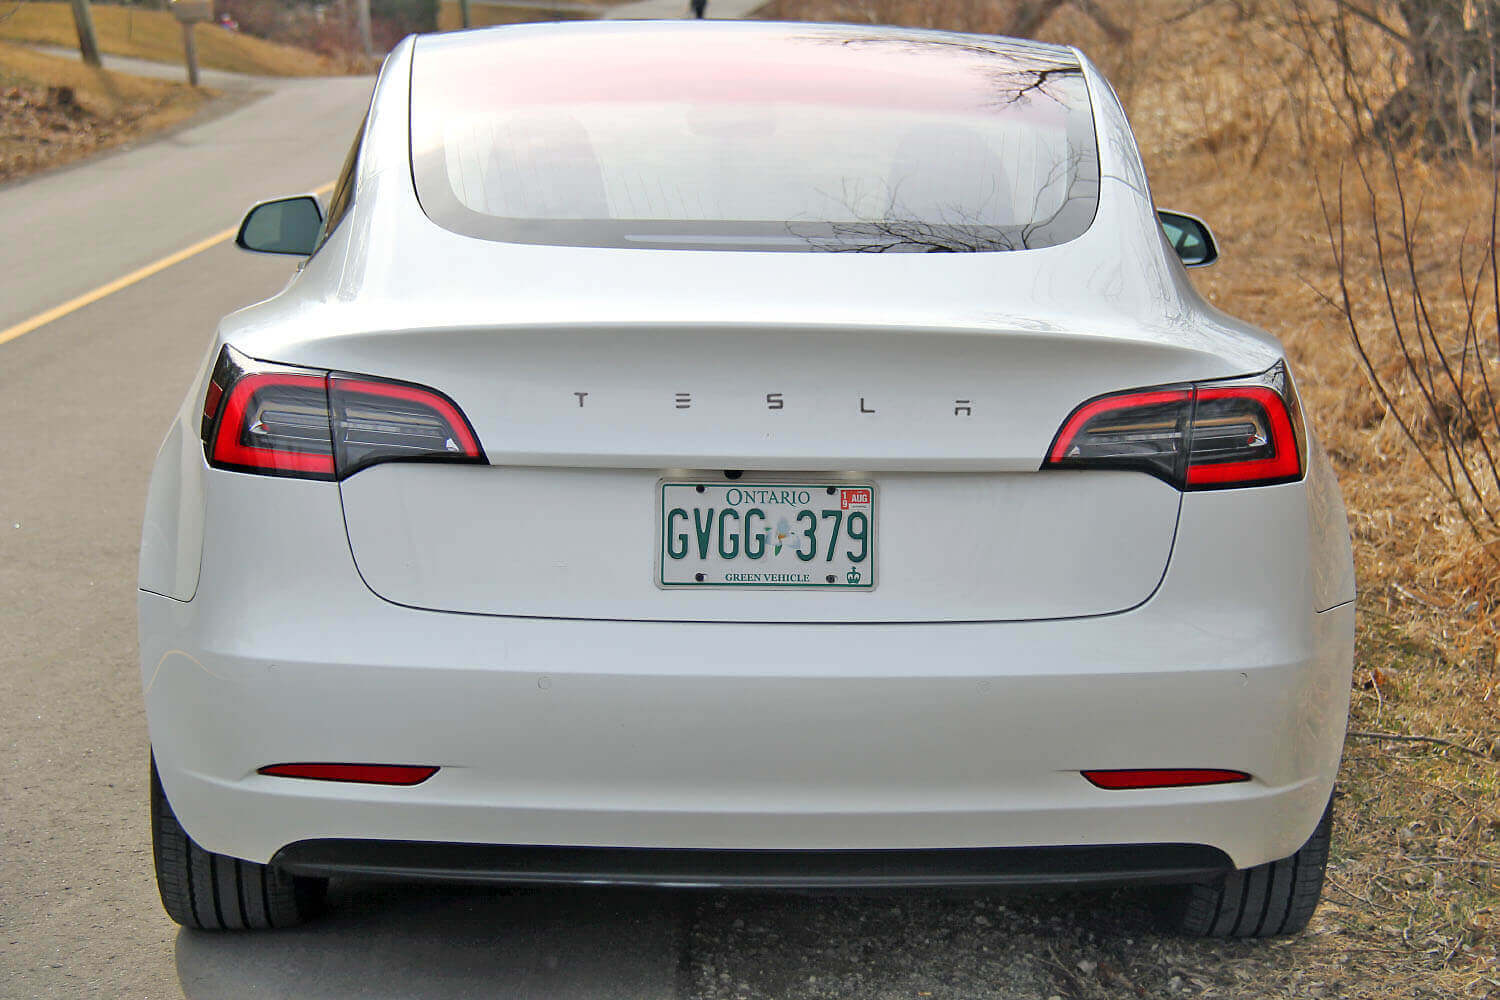 Tesla Model 3 - Je remplace les logos, fini le chromé 